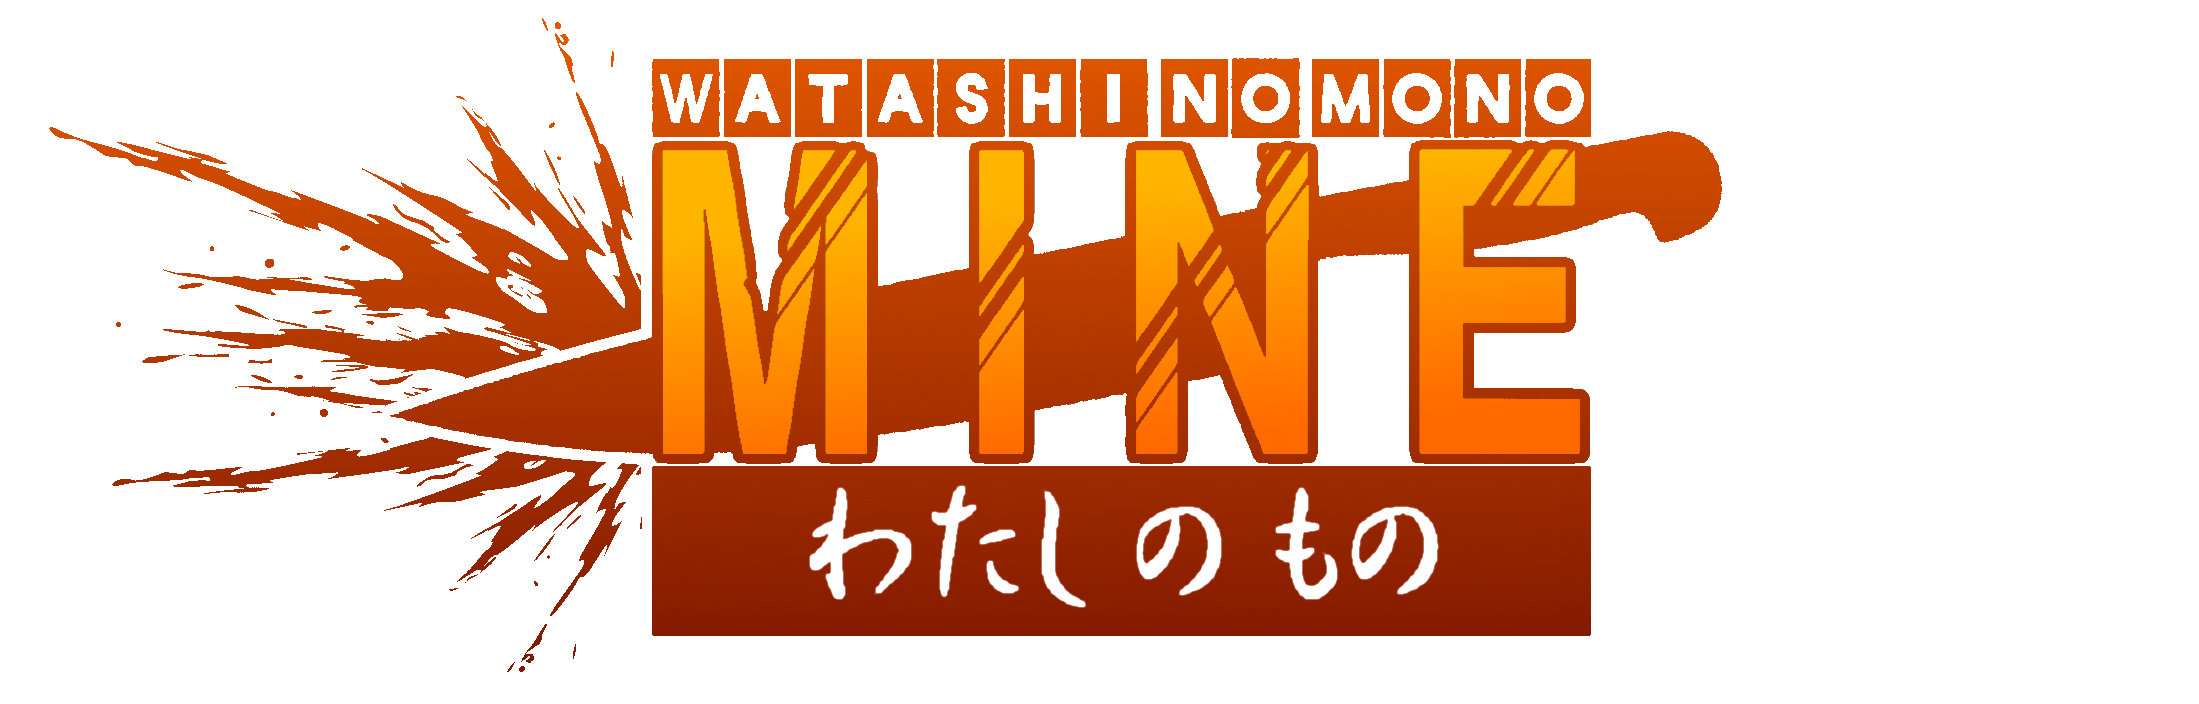 Watashi No Mono Wiki